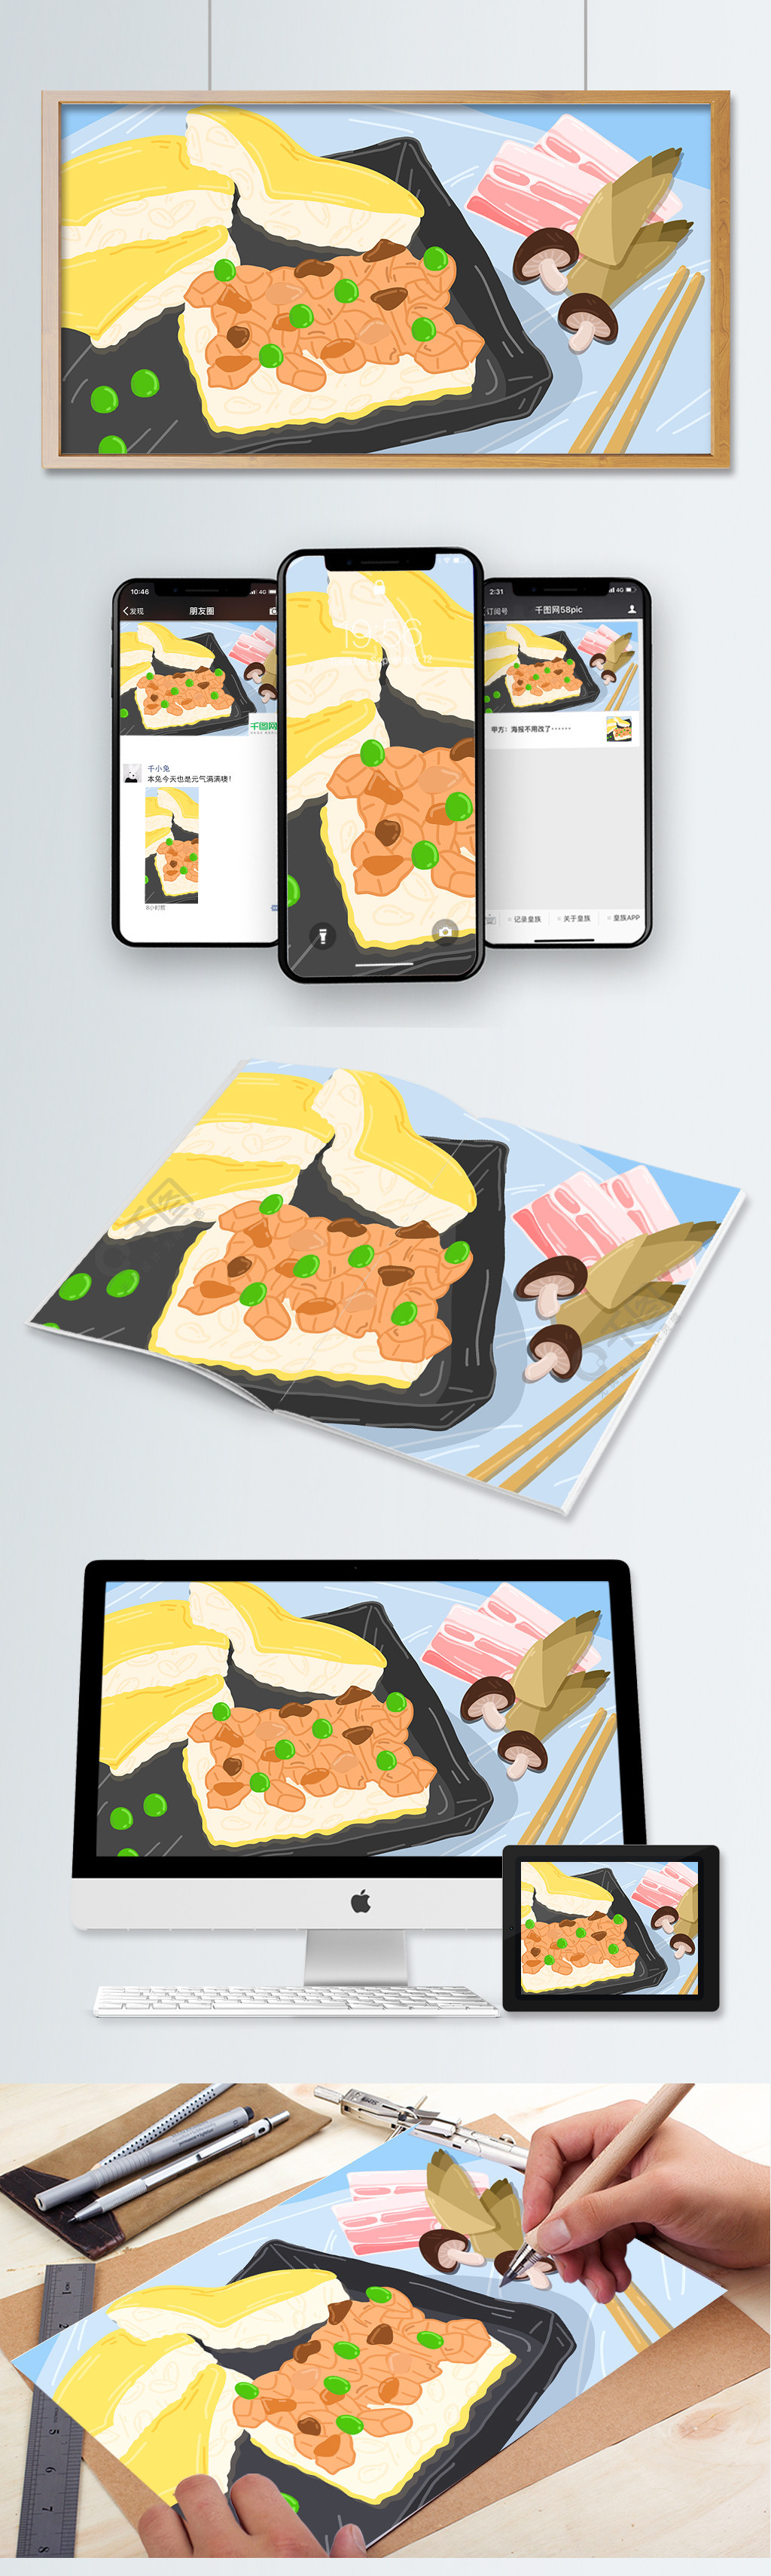 城市美食武汉传统特色小吃三鲜豆皮卡通插画3年前发布